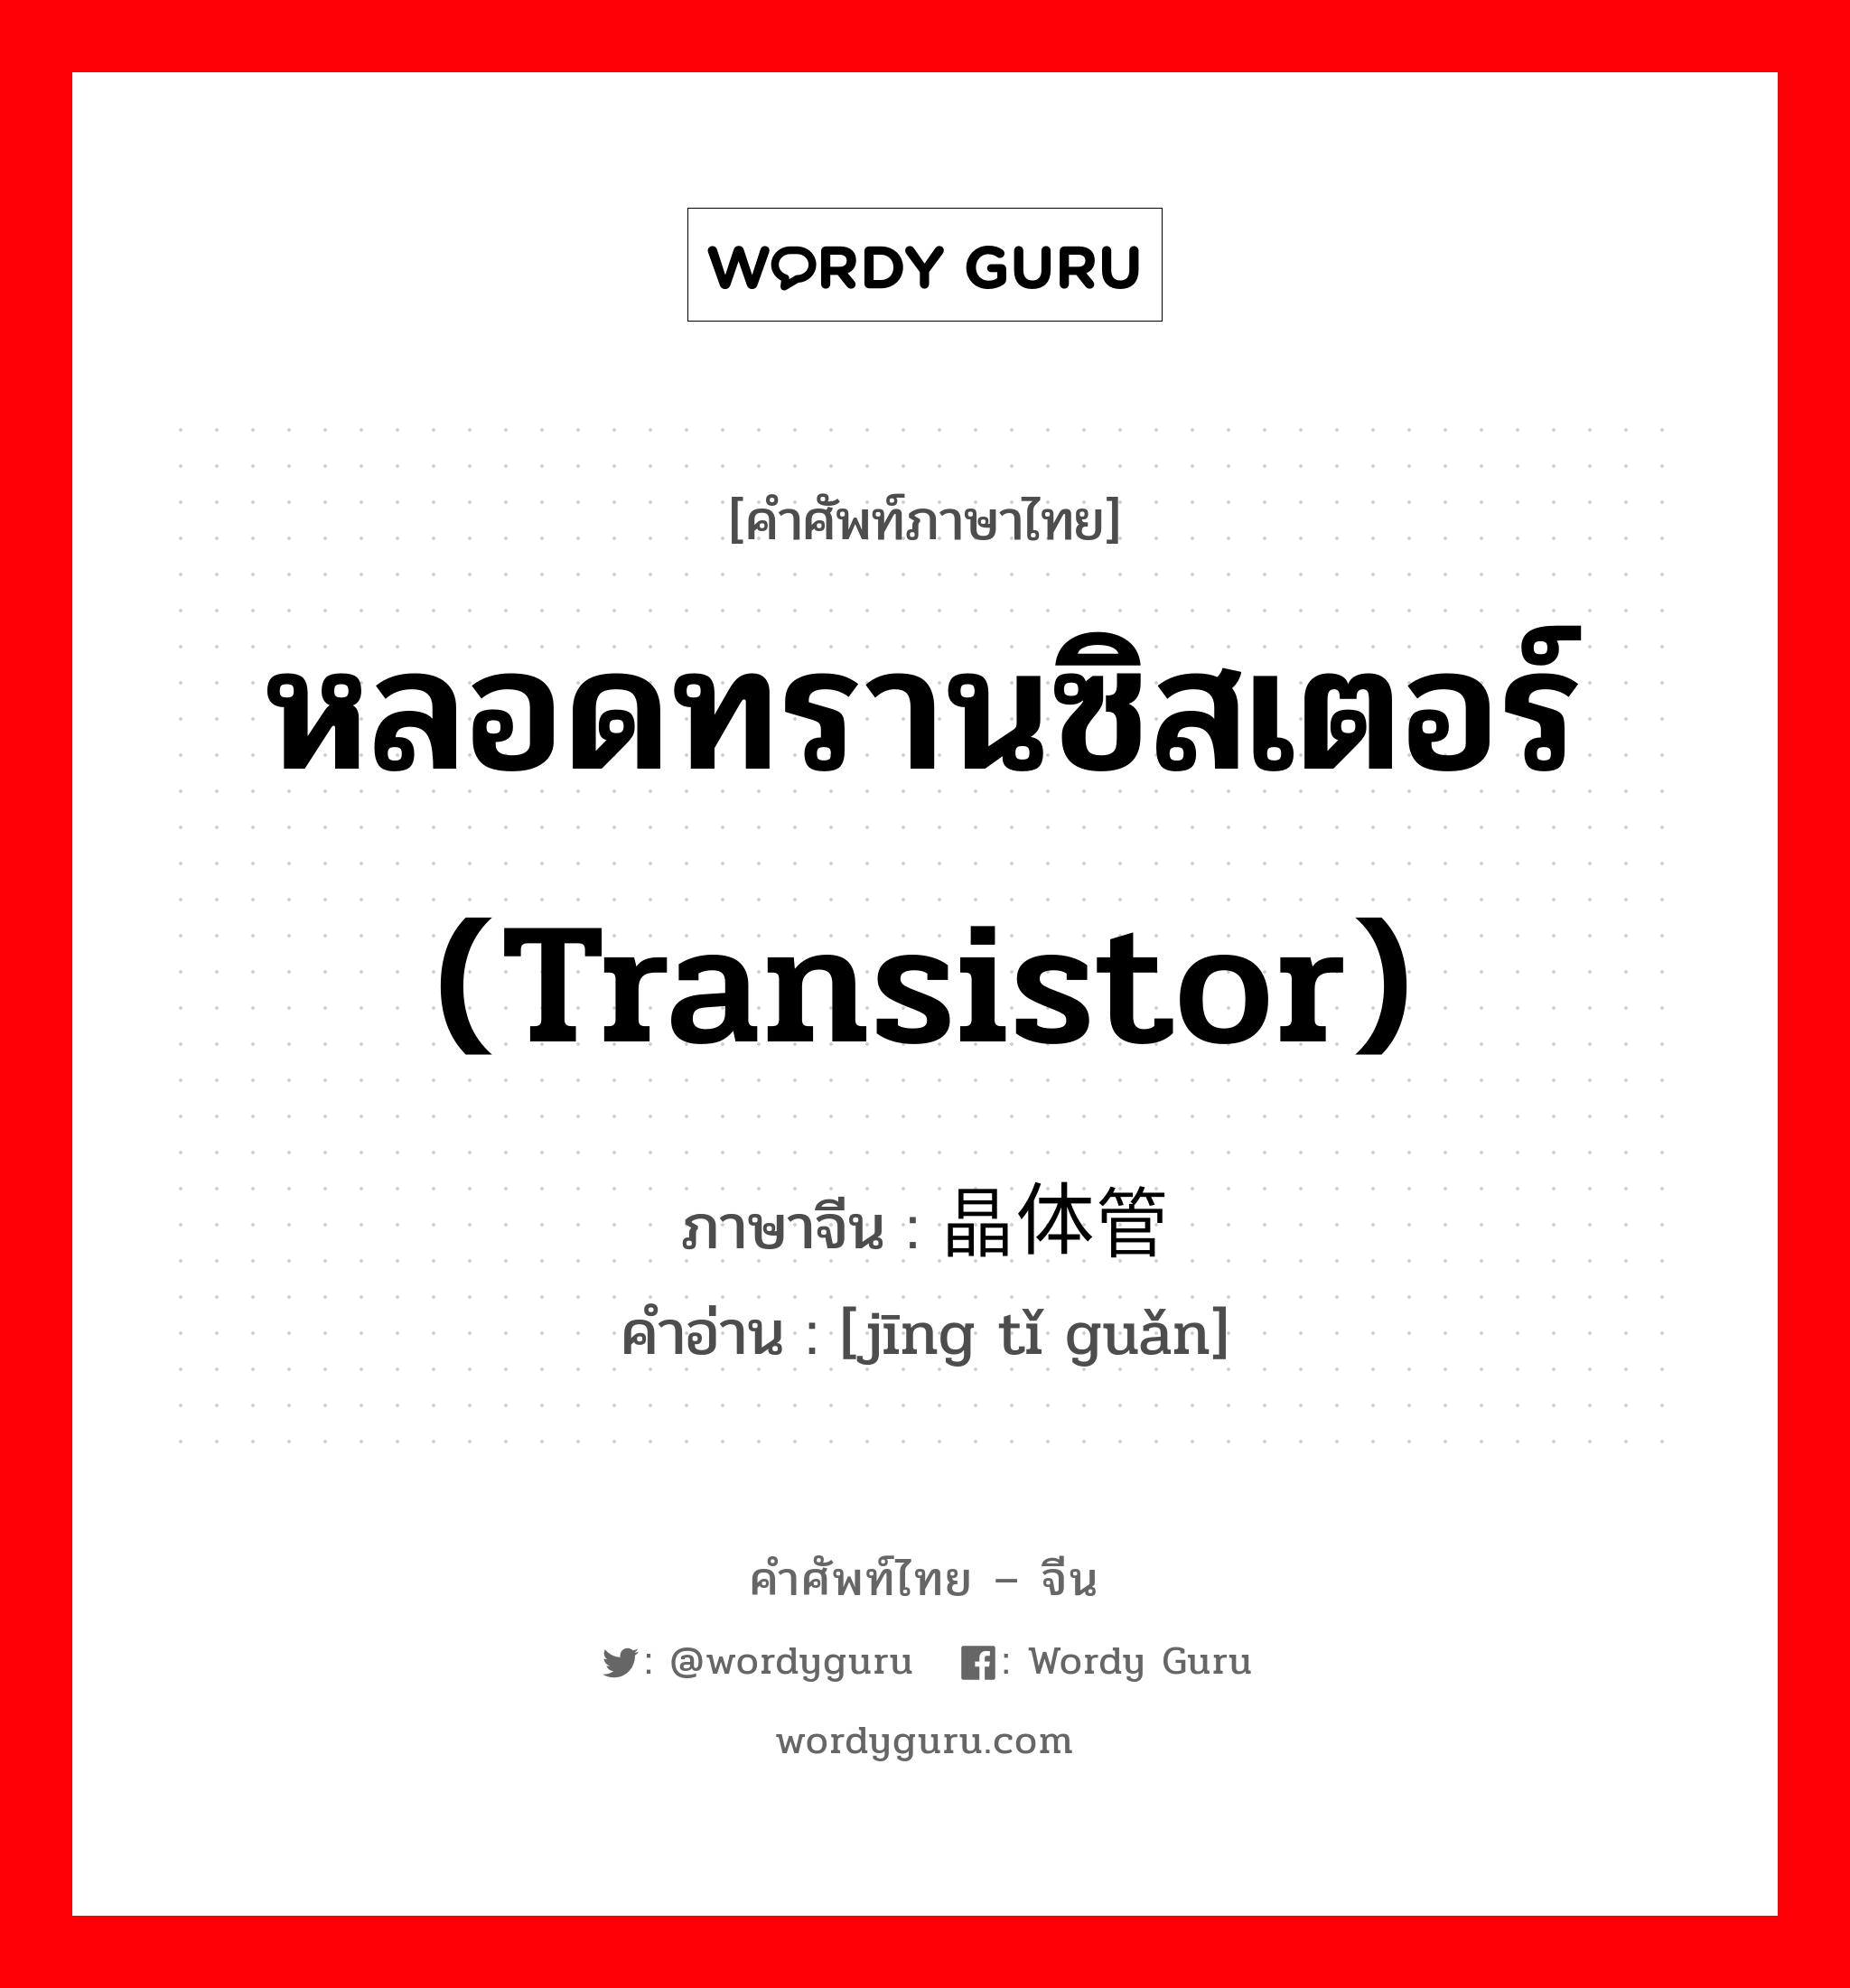 หลอดทรานซิสเตอร์ (transistor) ภาษาจีนคืออะไร, คำศัพท์ภาษาไทย - จีน หลอดทรานซิสเตอร์ (transistor) ภาษาจีน 晶体管 คำอ่าน [jīng tǐ guǎn]